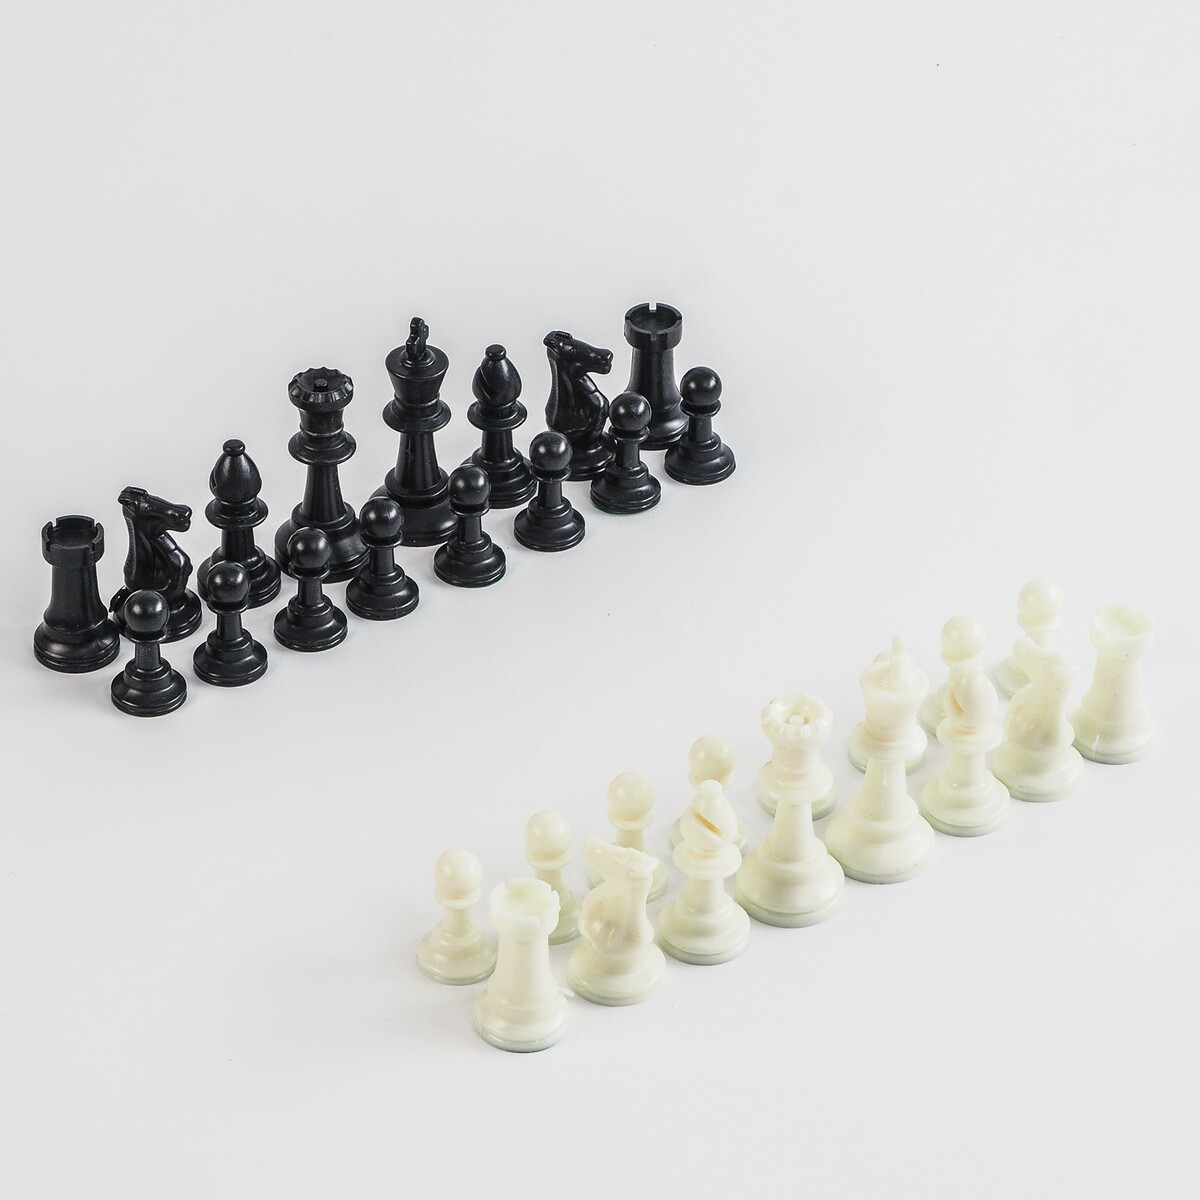 Шахматные фигуры, пластик, король h-7.5 см, пешка h-3.5 см шахматные фигуры гроссмейстерские